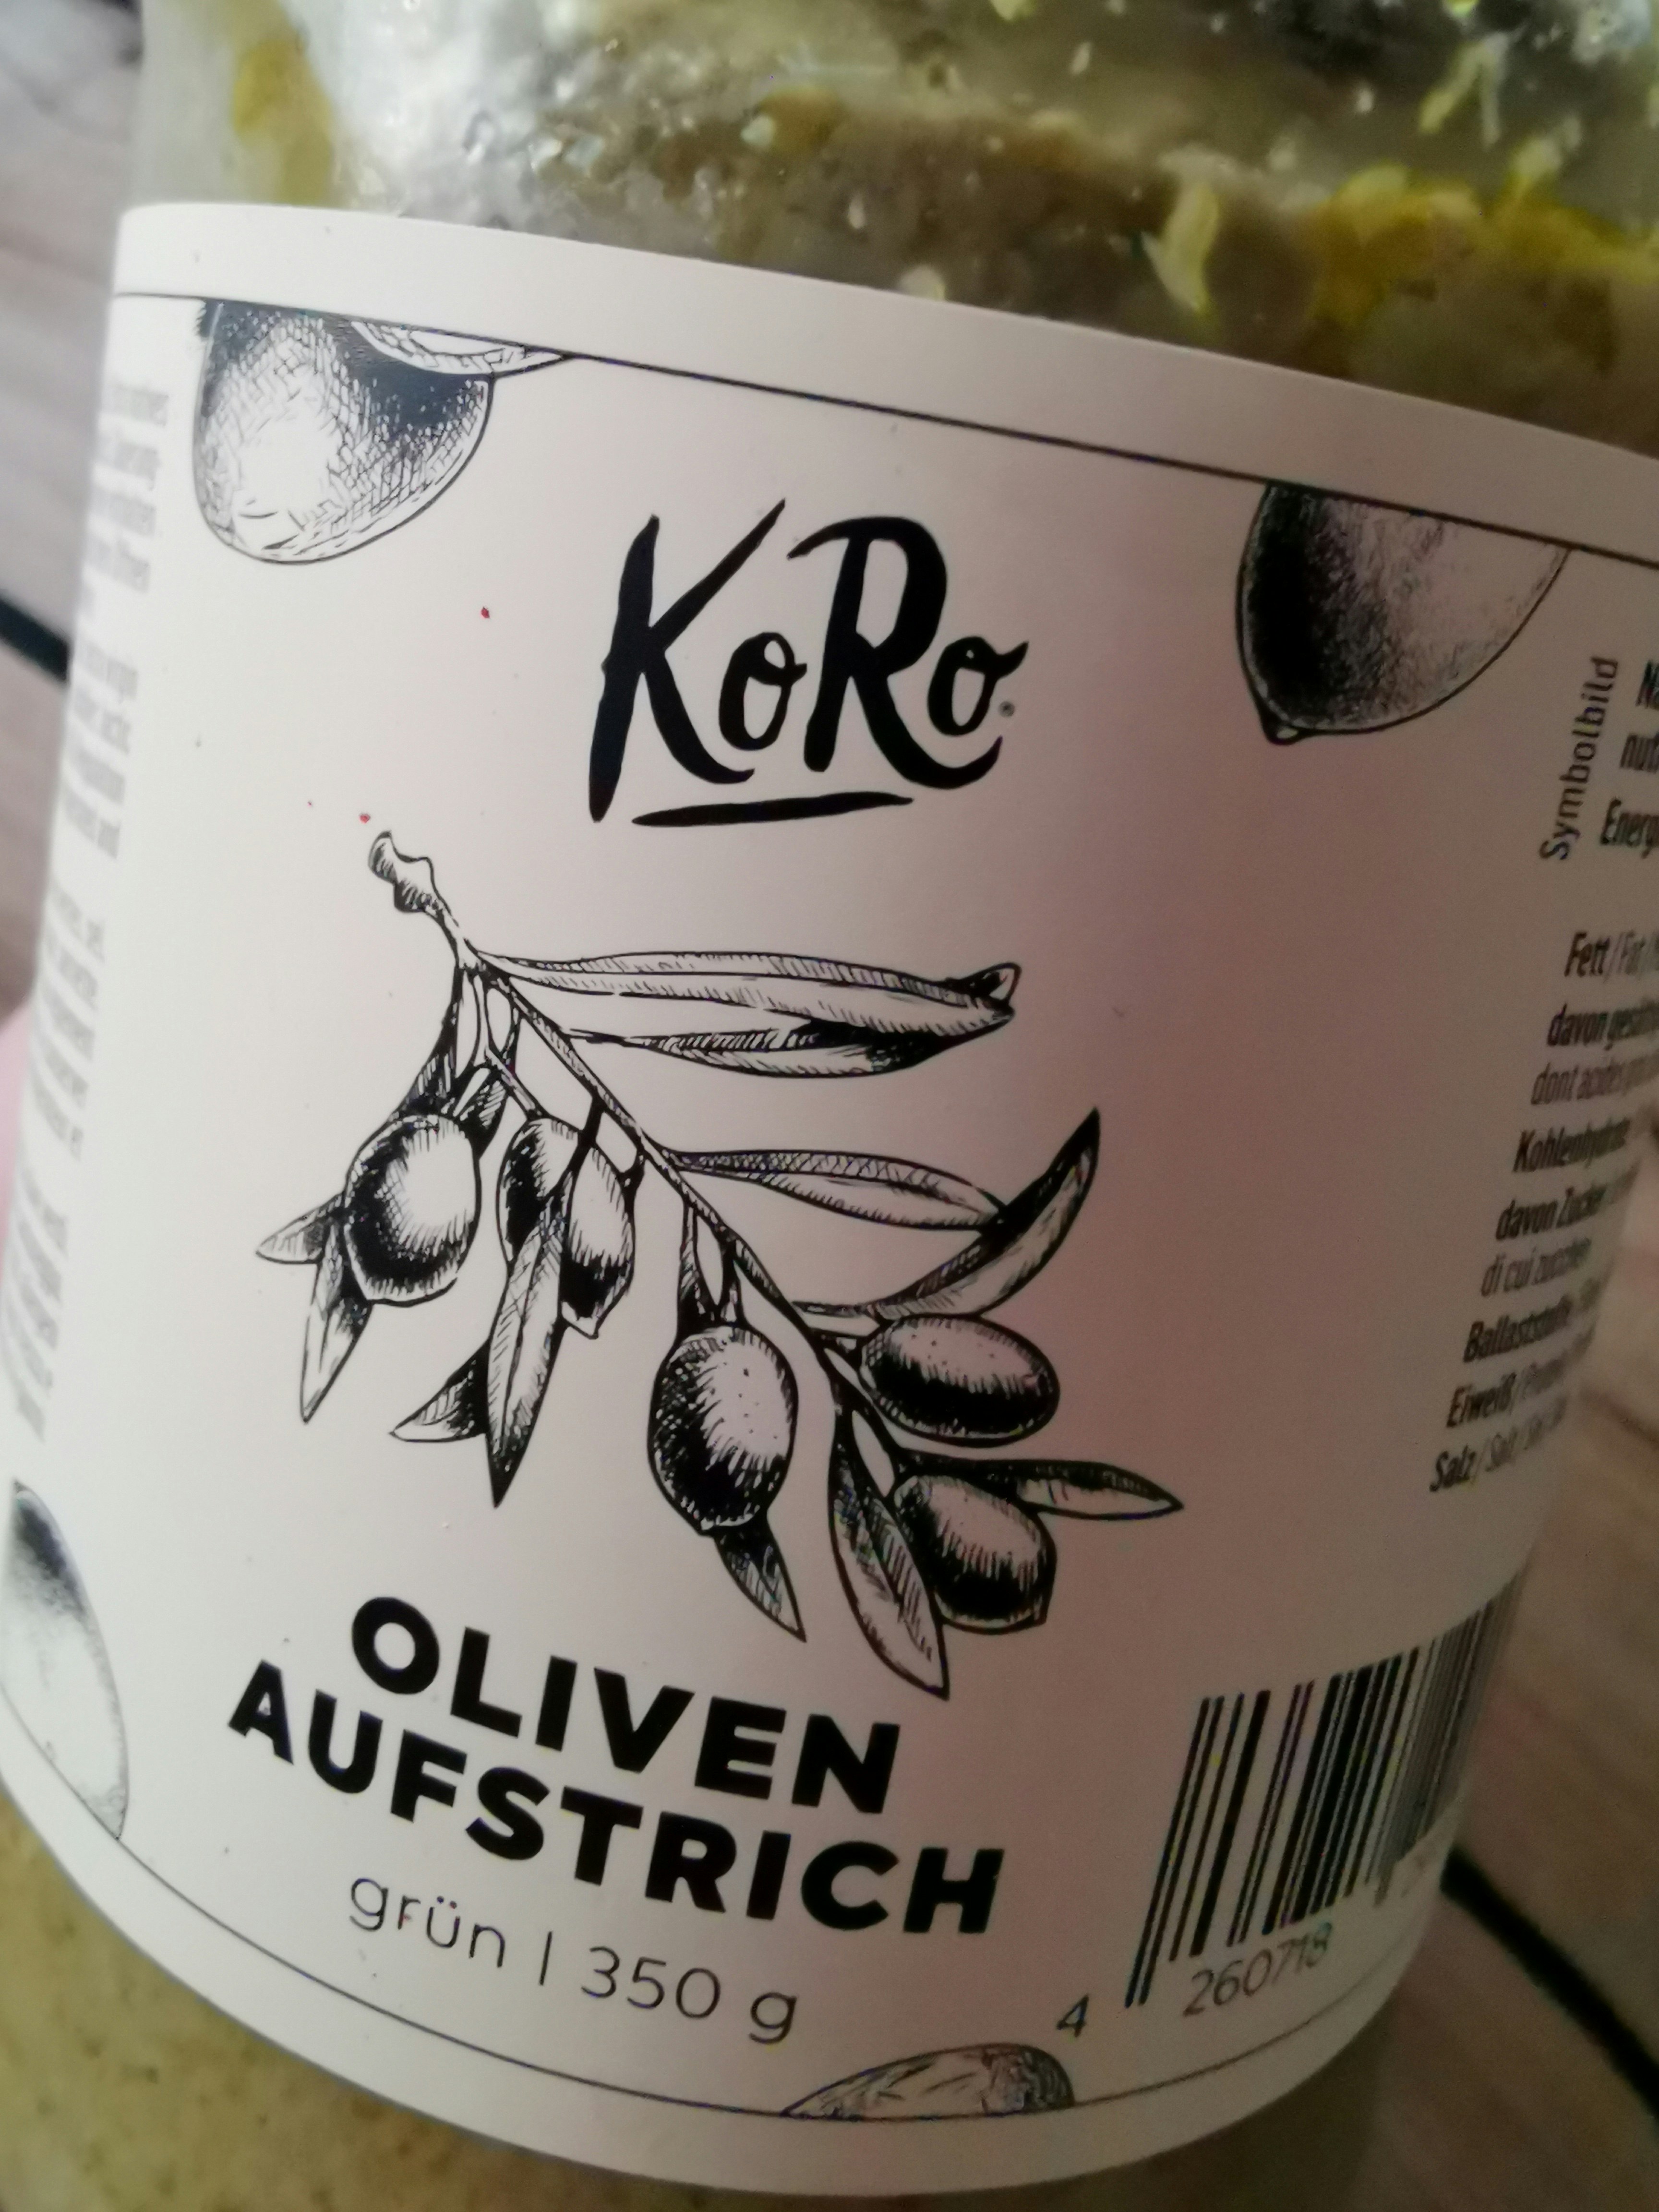 Oliven Aufstrich grün kaufen | KoRo Germany